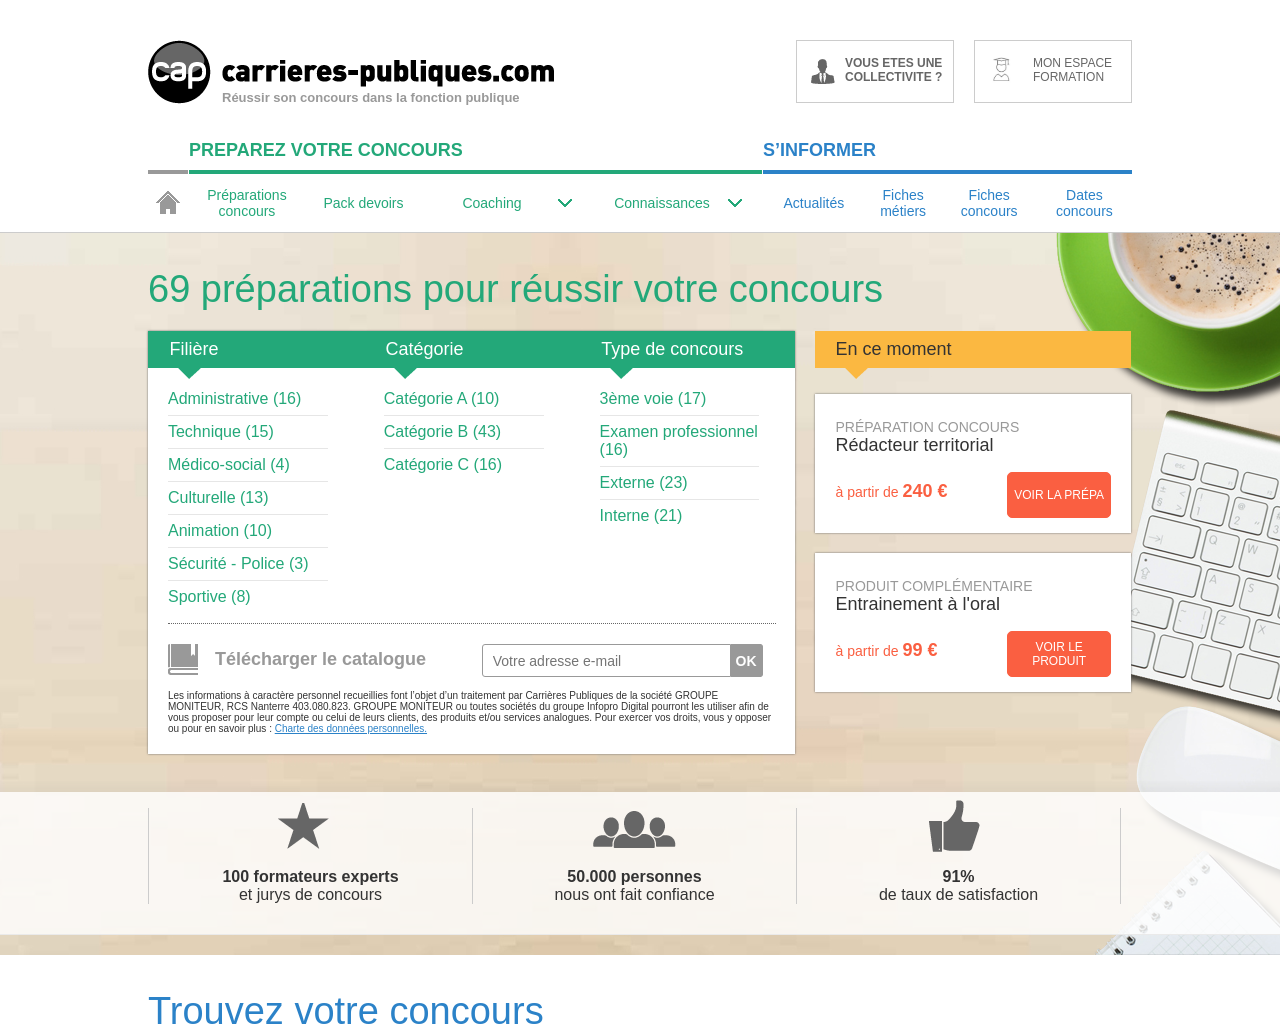 www.carrieres-publiques.com